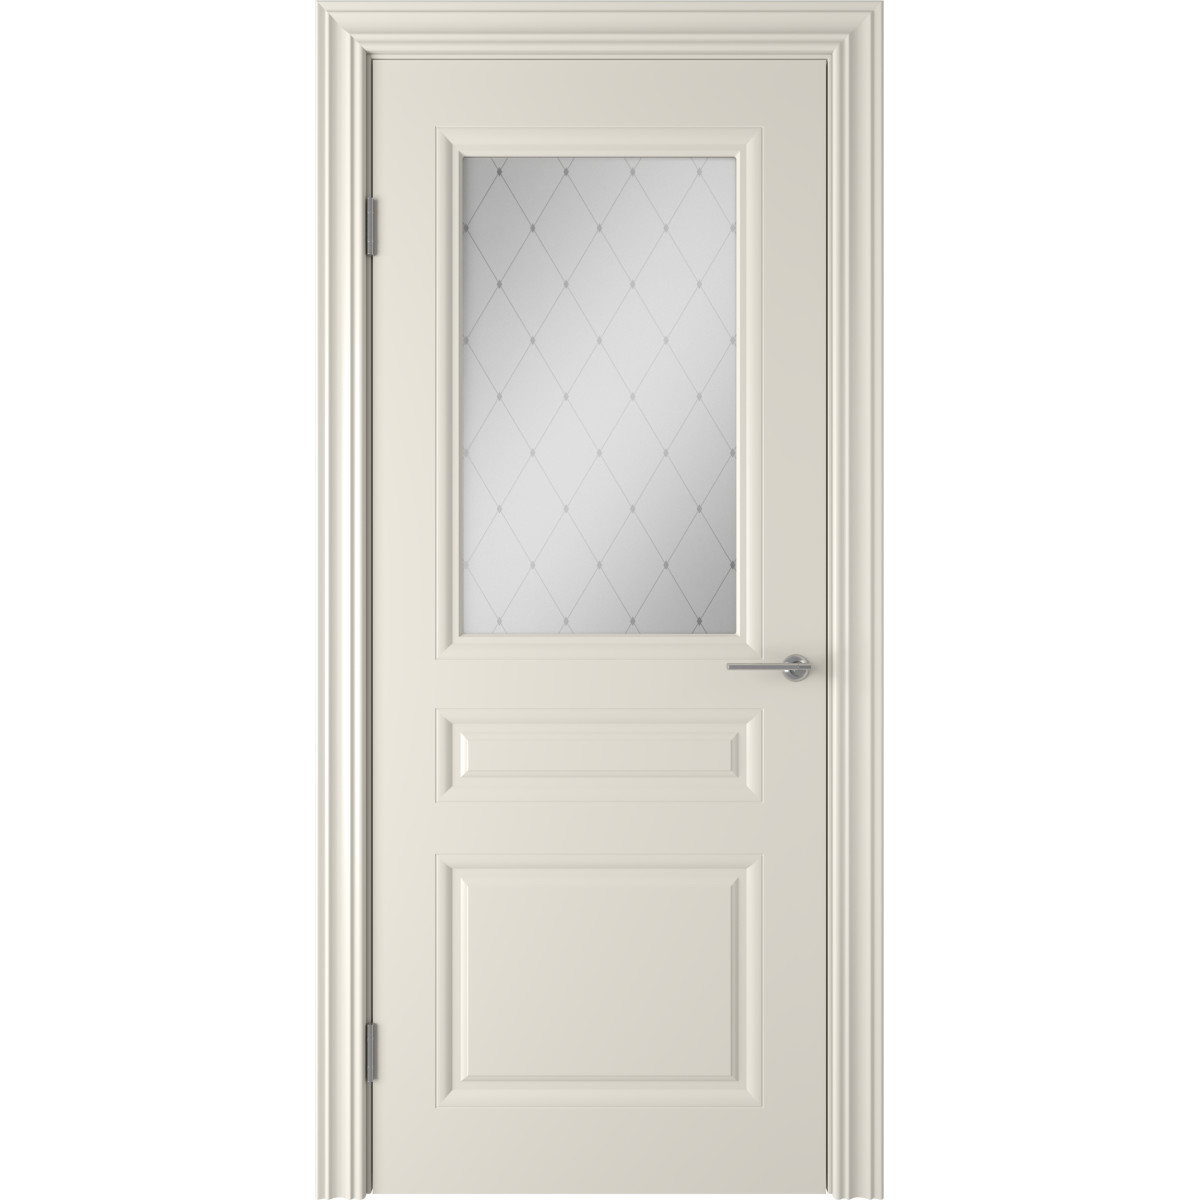 Дверь межкомнатная остеклённая с замком и петлями в комплекте Стелла 90x200 см эмаль цвет слоновая кость